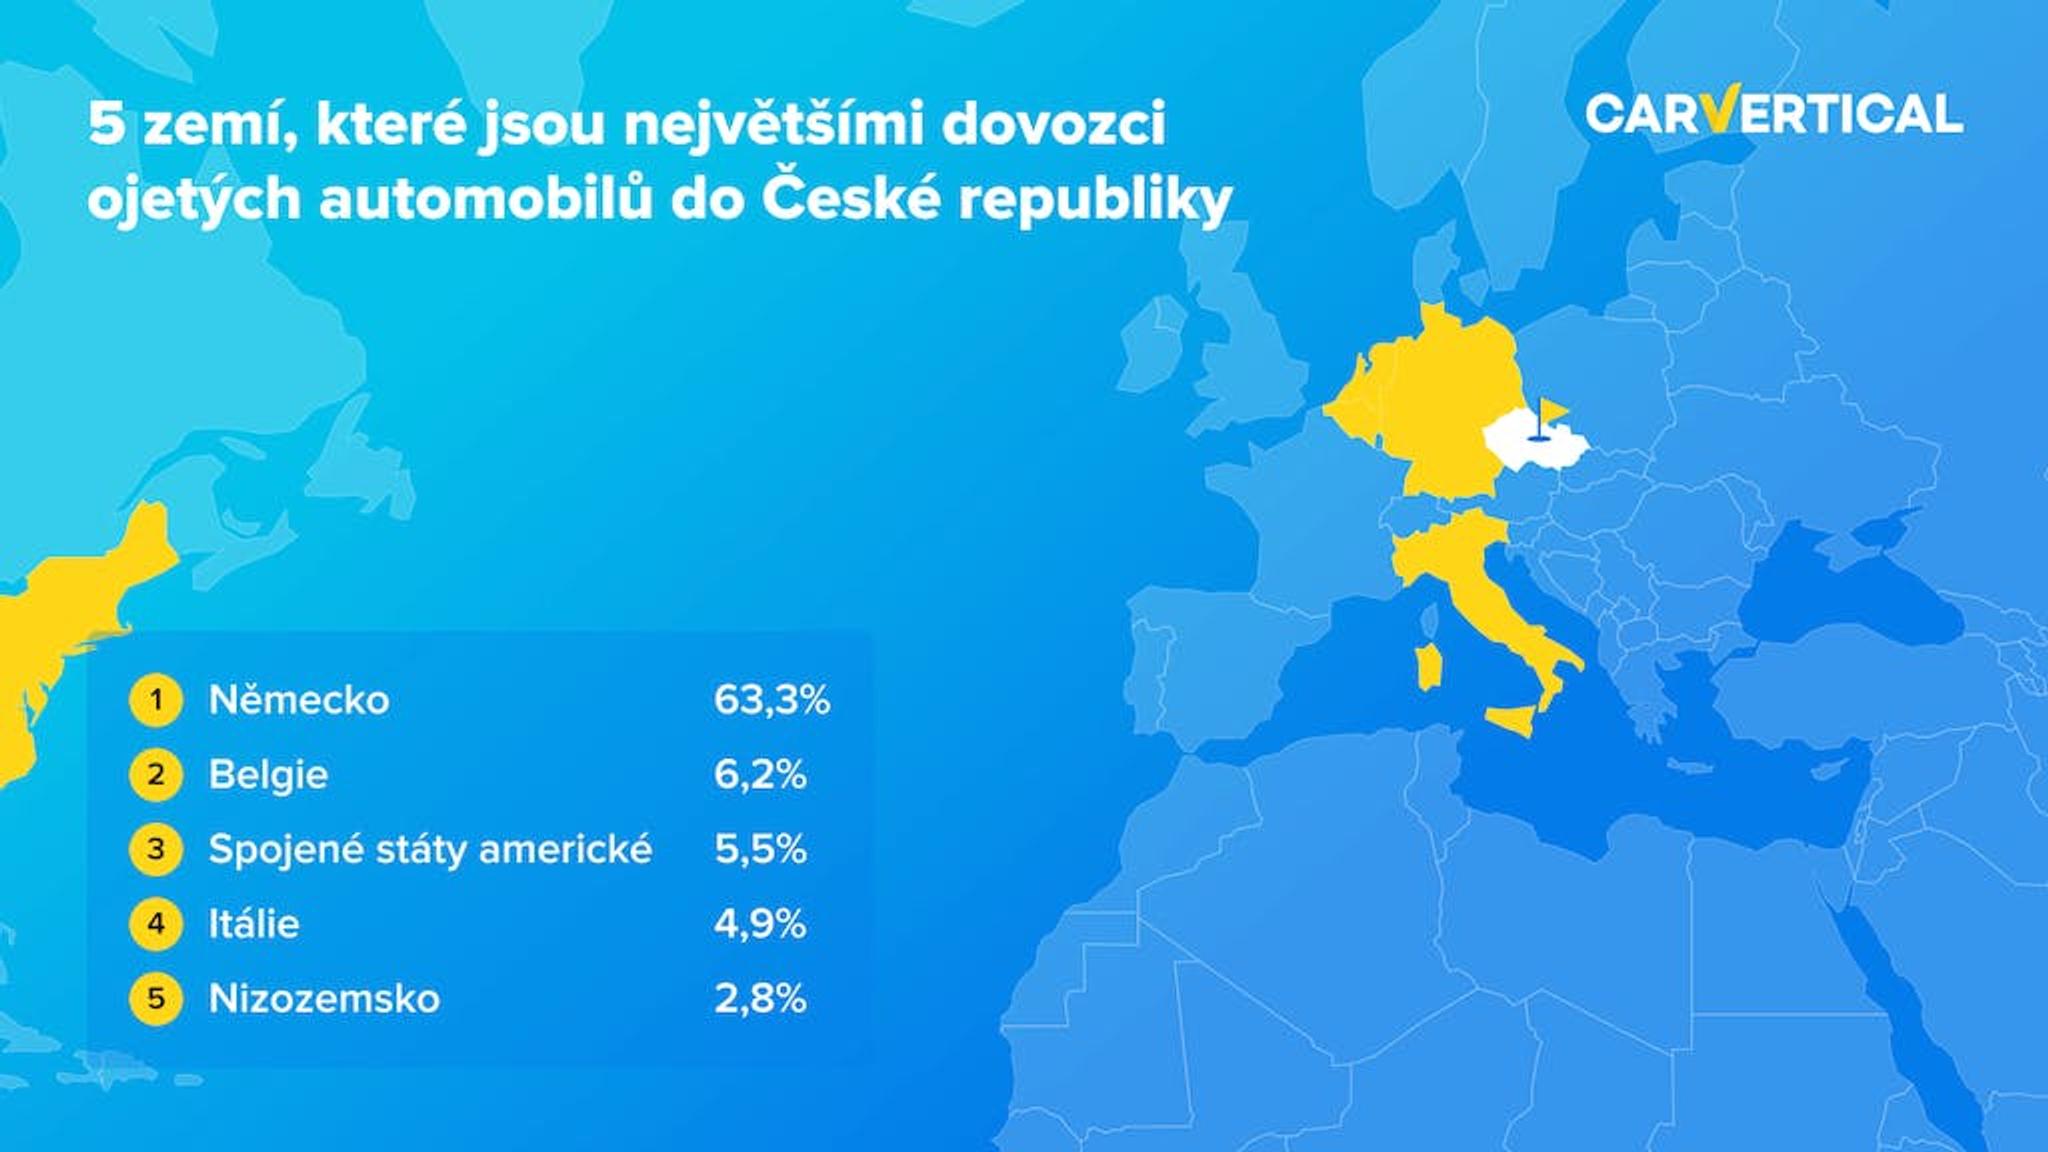 5 zemi, ktere jsou nejvetšimi dovozci ojetych automobilu do Česke republiky